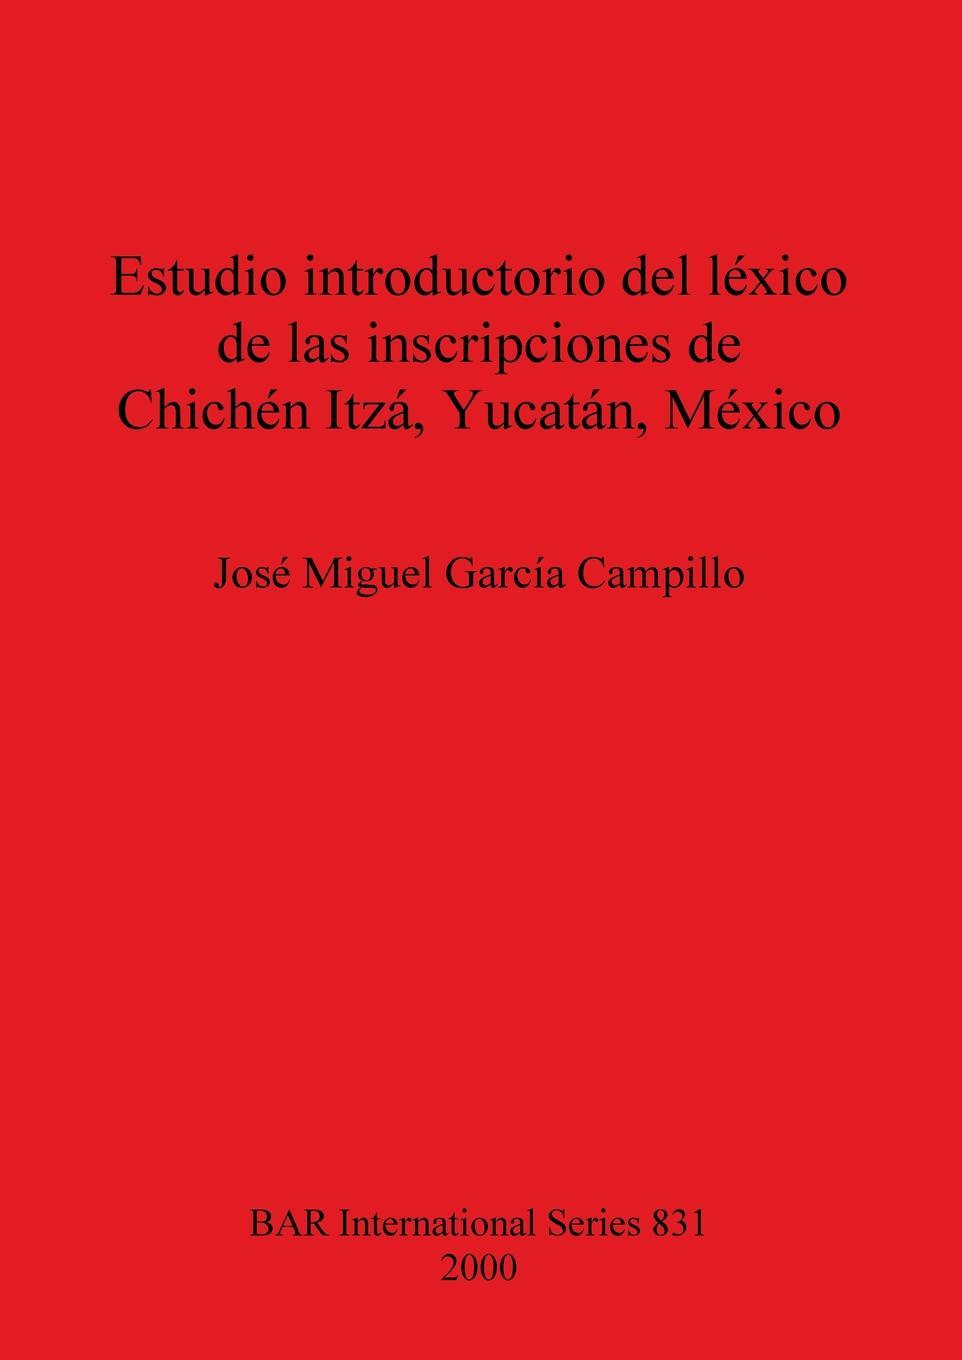 Carte Estudio introductorio del lexico de las inscripciones de Chichen Itza Yucatan Jose Migual Garcia Campillo